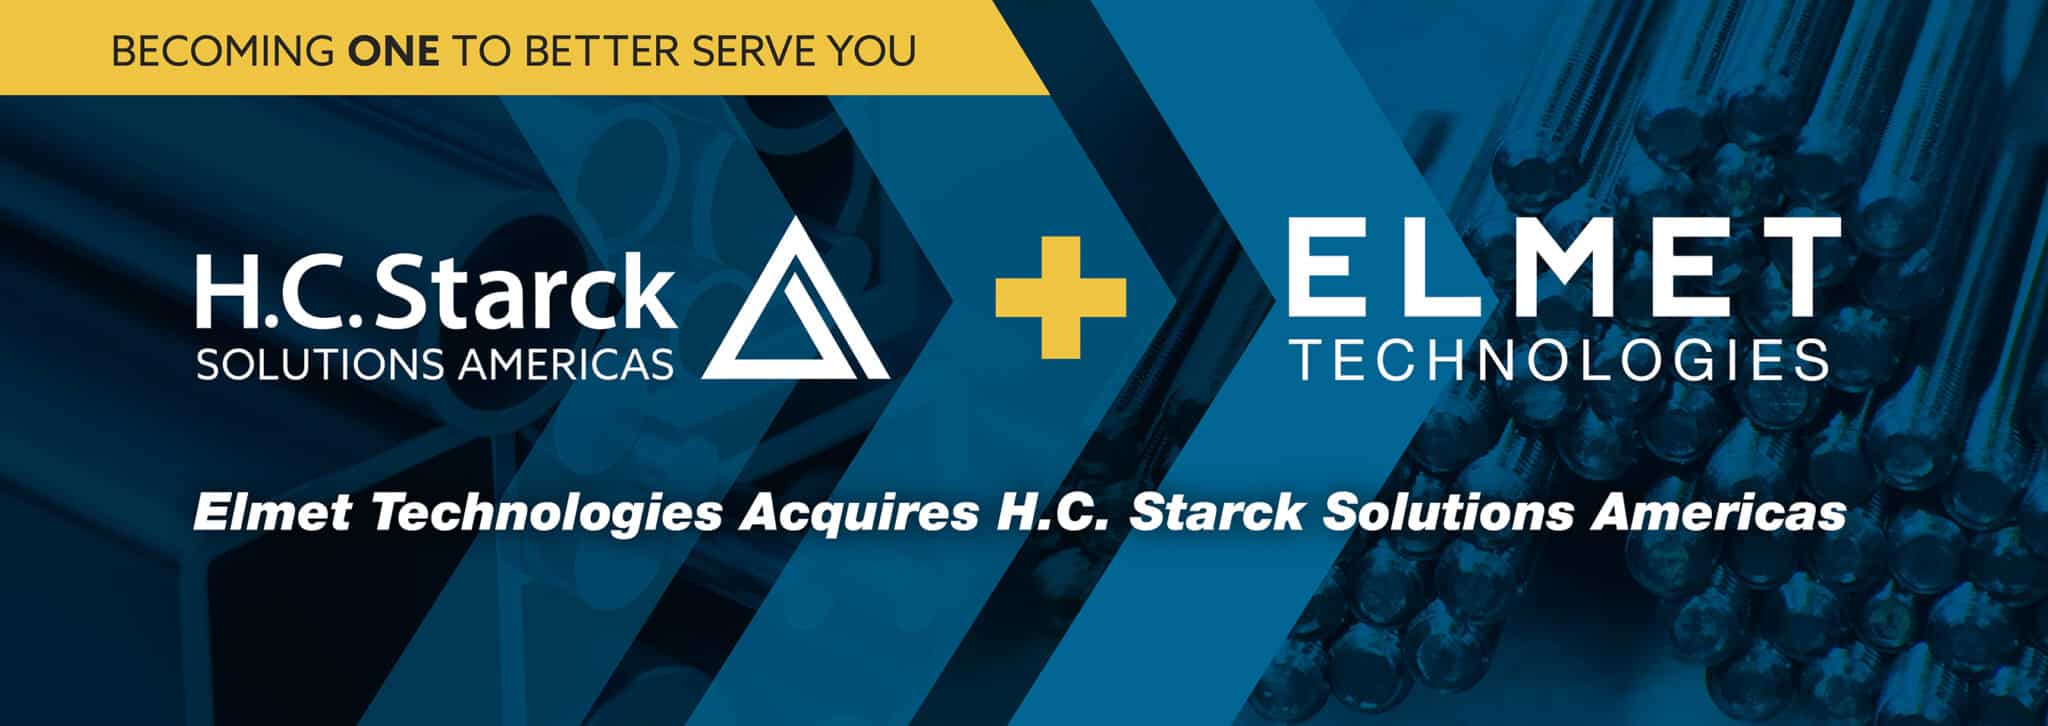 Elmet Technologies Acquires H.C. Starck Solutions Americas